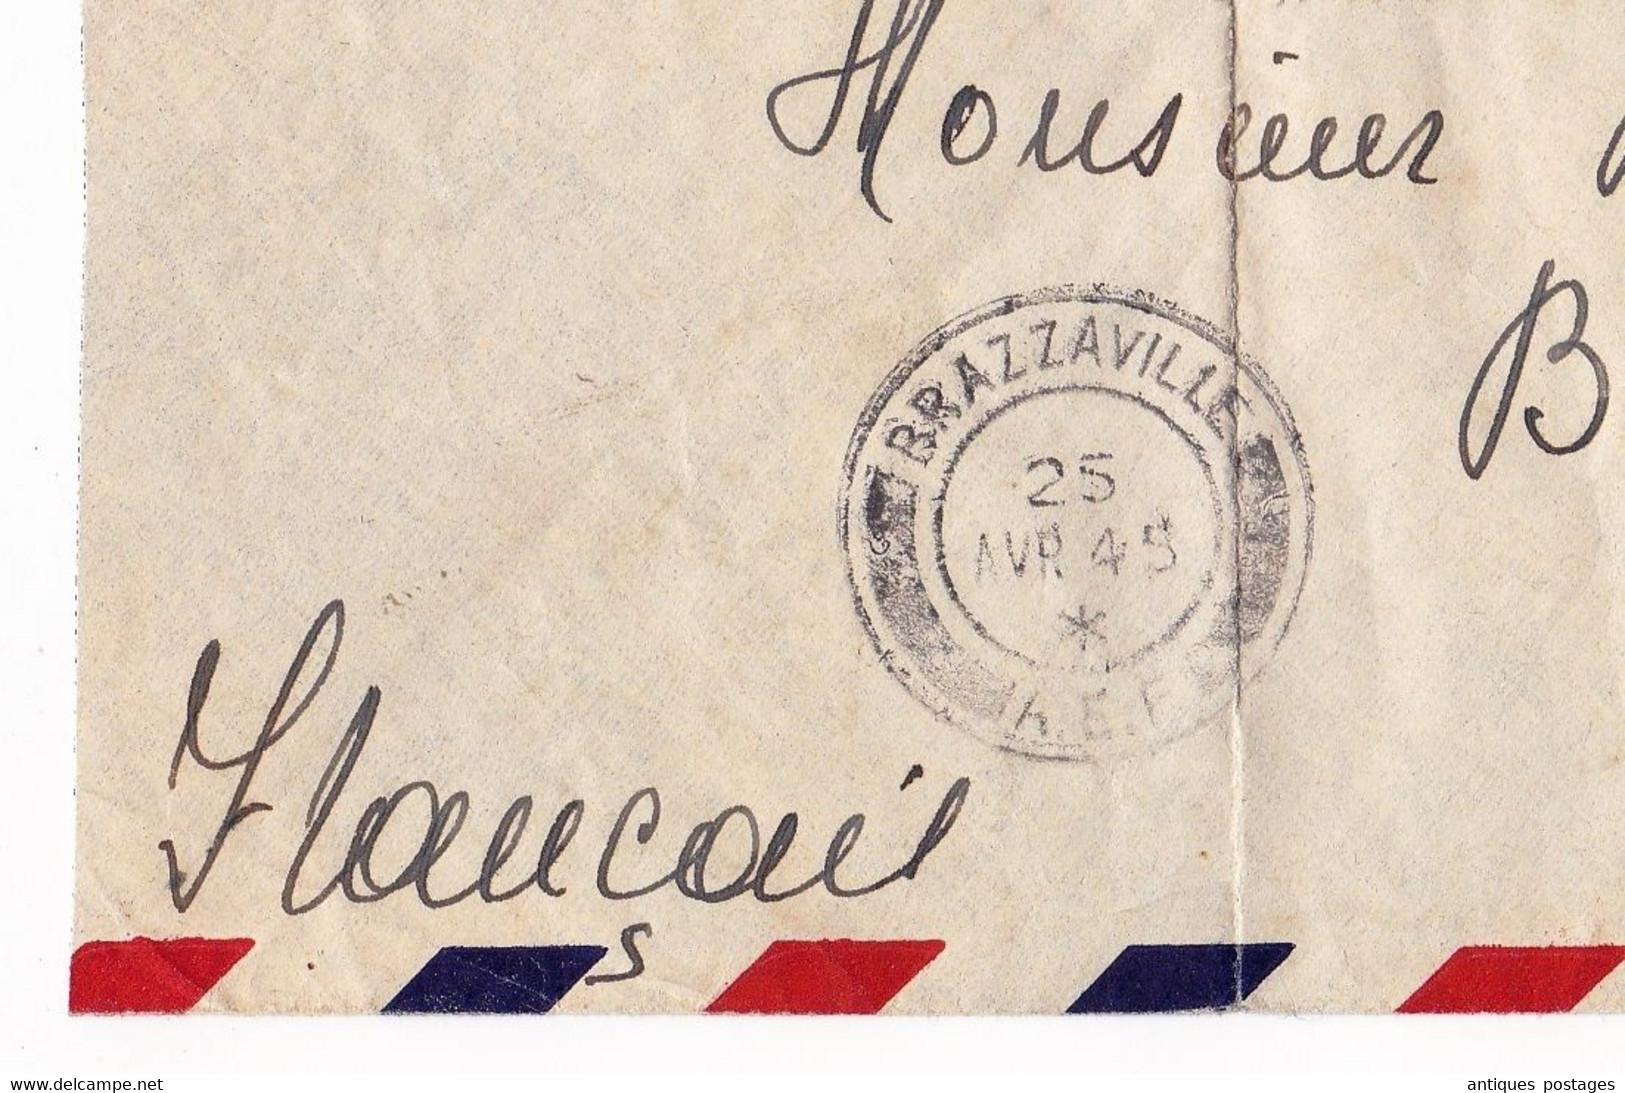 Lettre Brazzaville 1945 Congo A.E.F. Leopoldville Congo Belge Costermansville Bukavu - Storia Postale